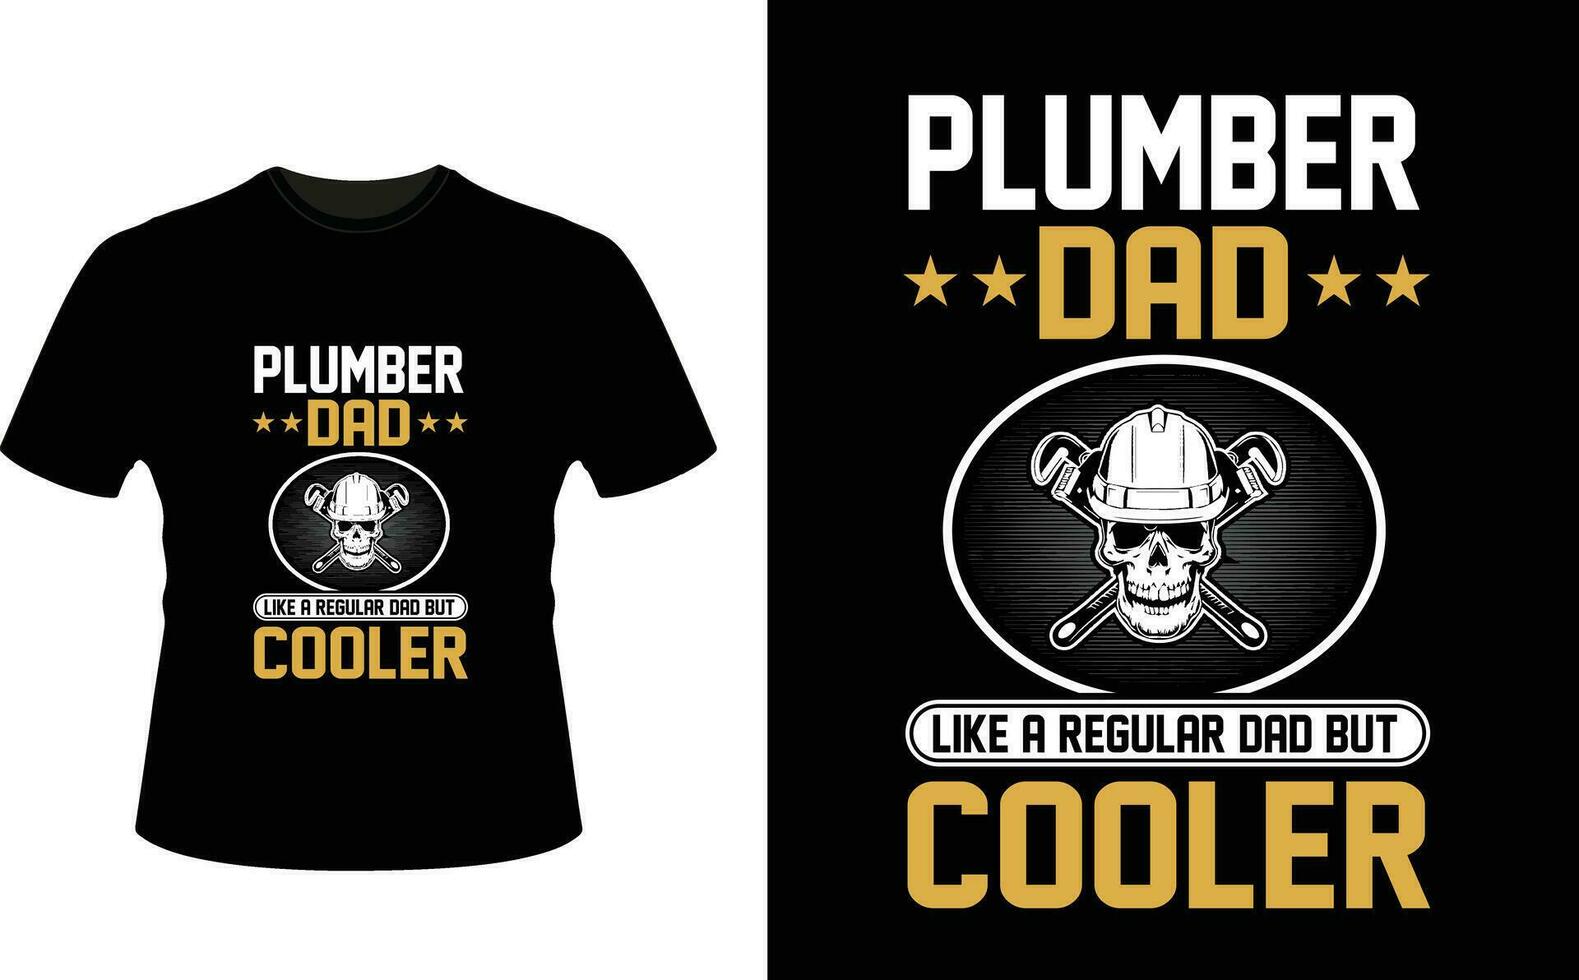 loodgieter vader Leuk vinden een regelmatig vader maar koeler of vader papa t-shirt ontwerp of vader dag t overhemd ontwerp vector